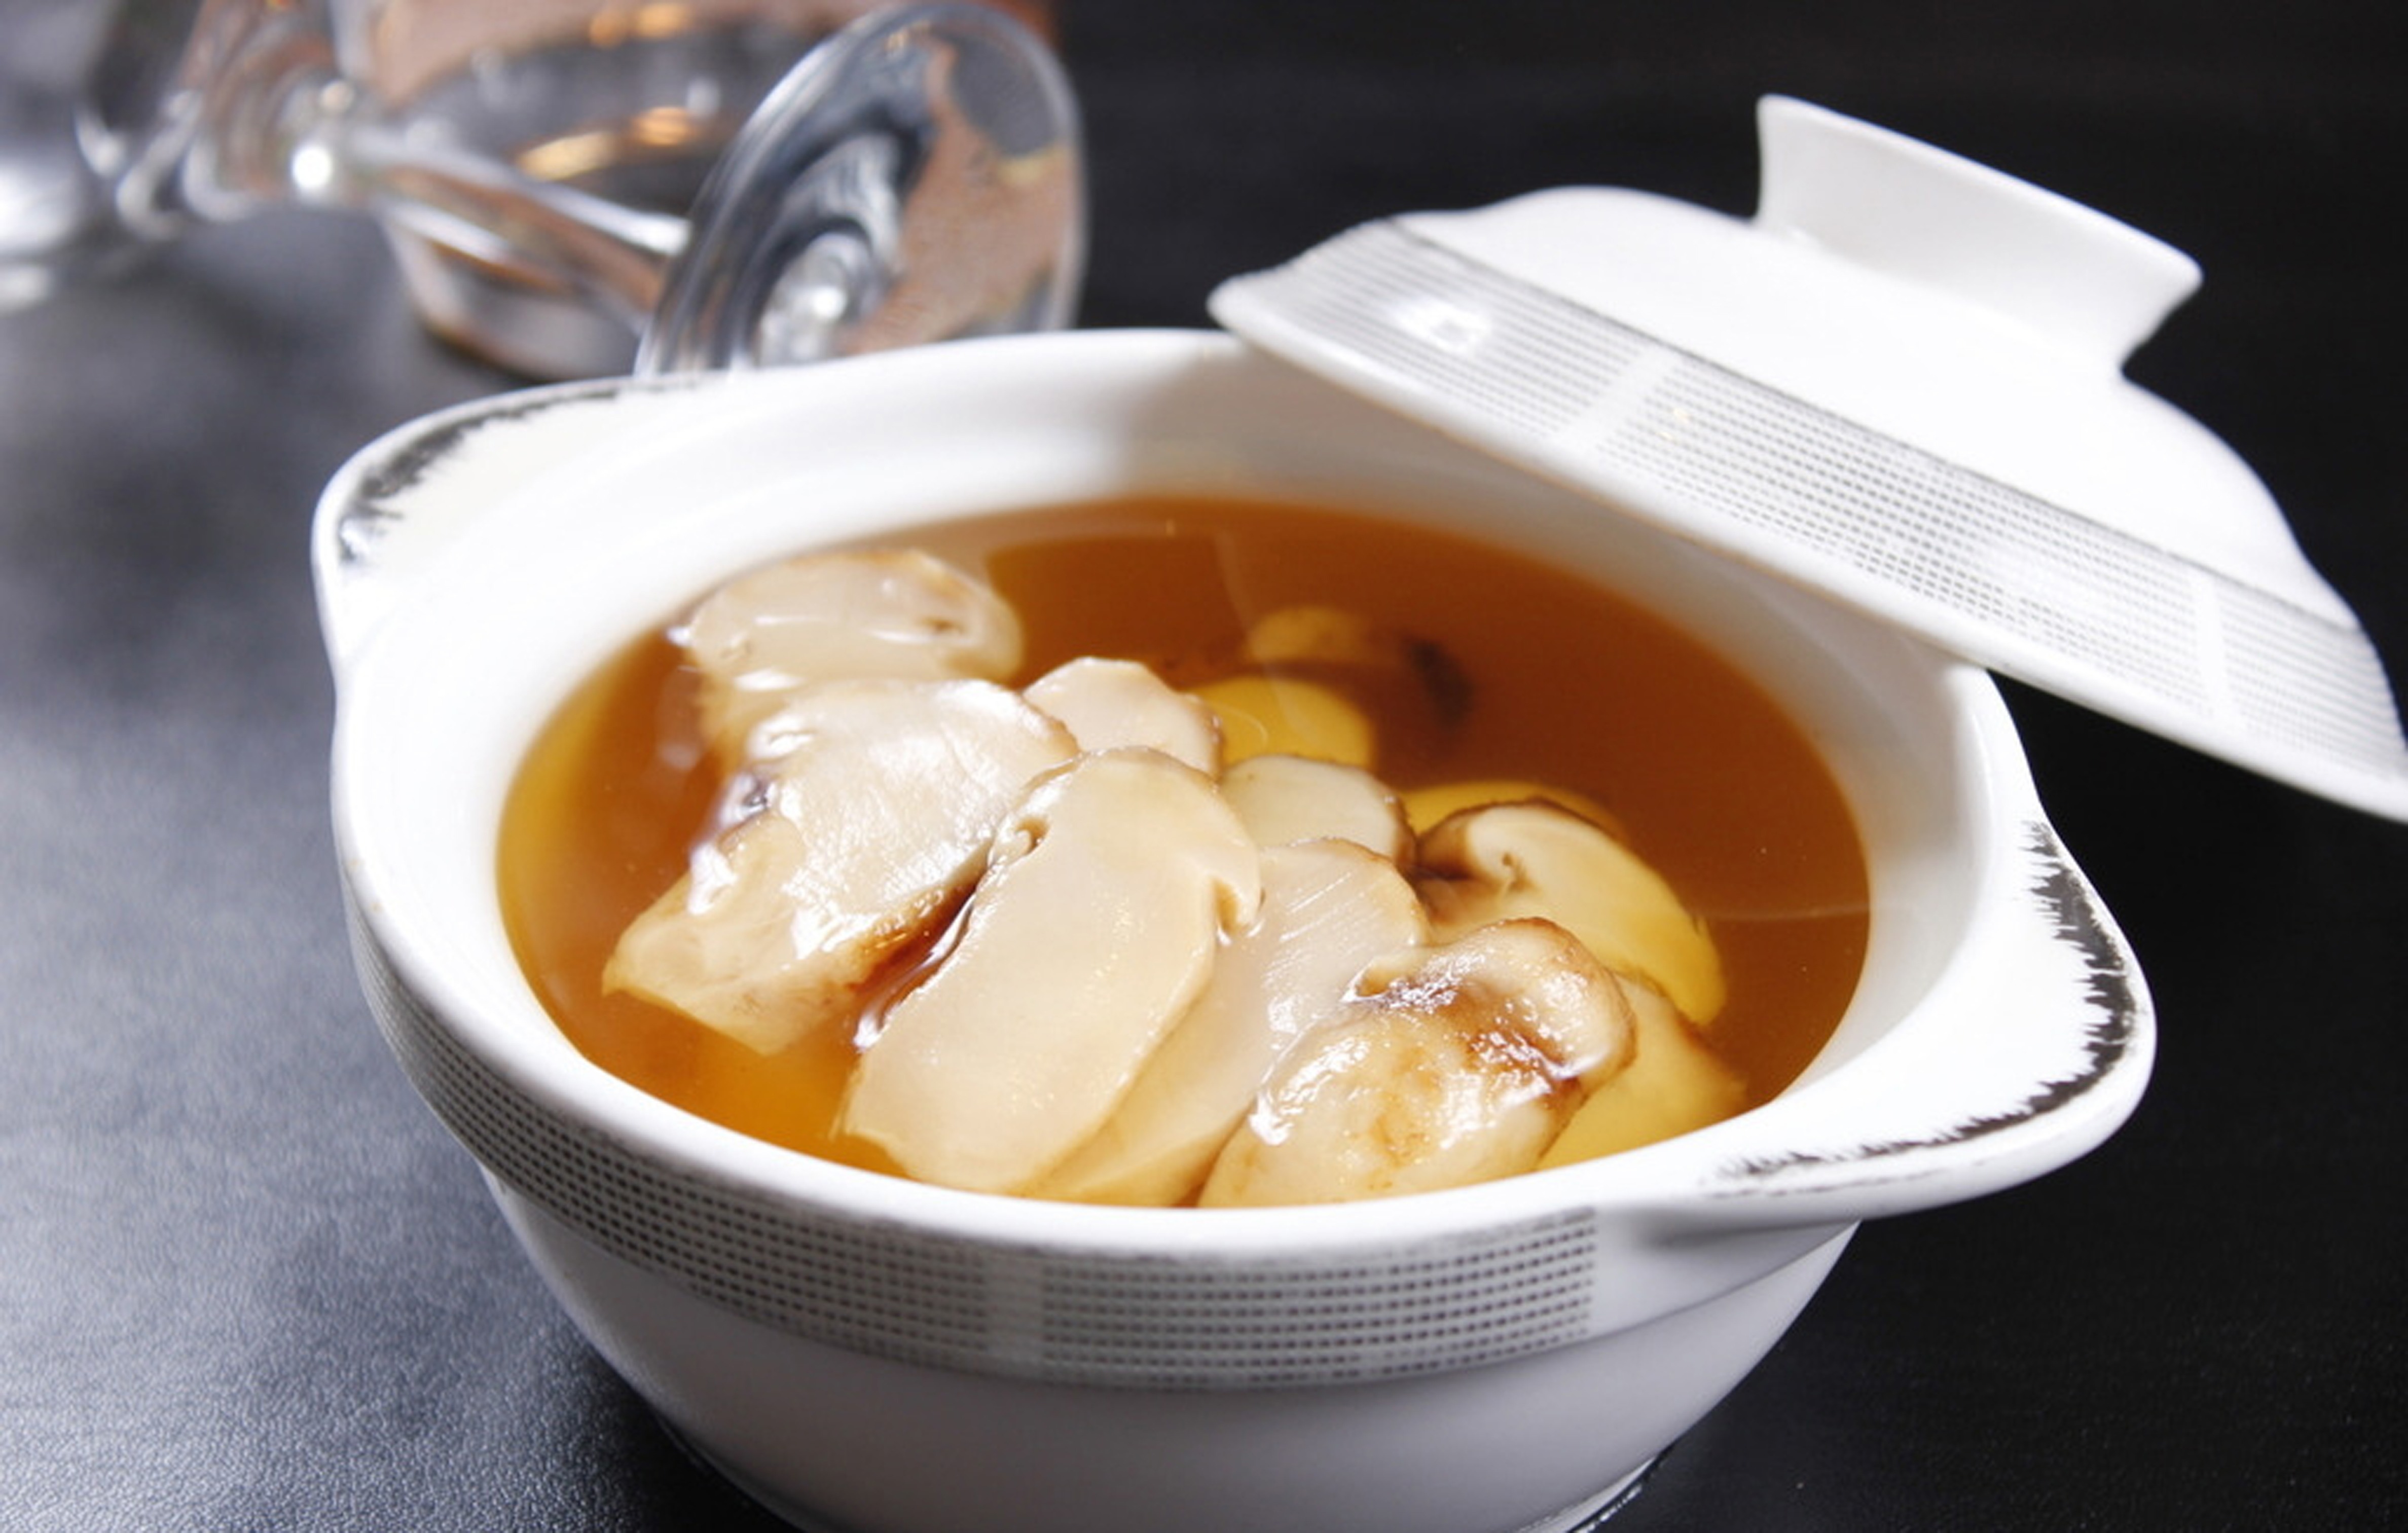 每日推荐六道沪菜:品味不一样的美食文化,清汤松茸菌汤